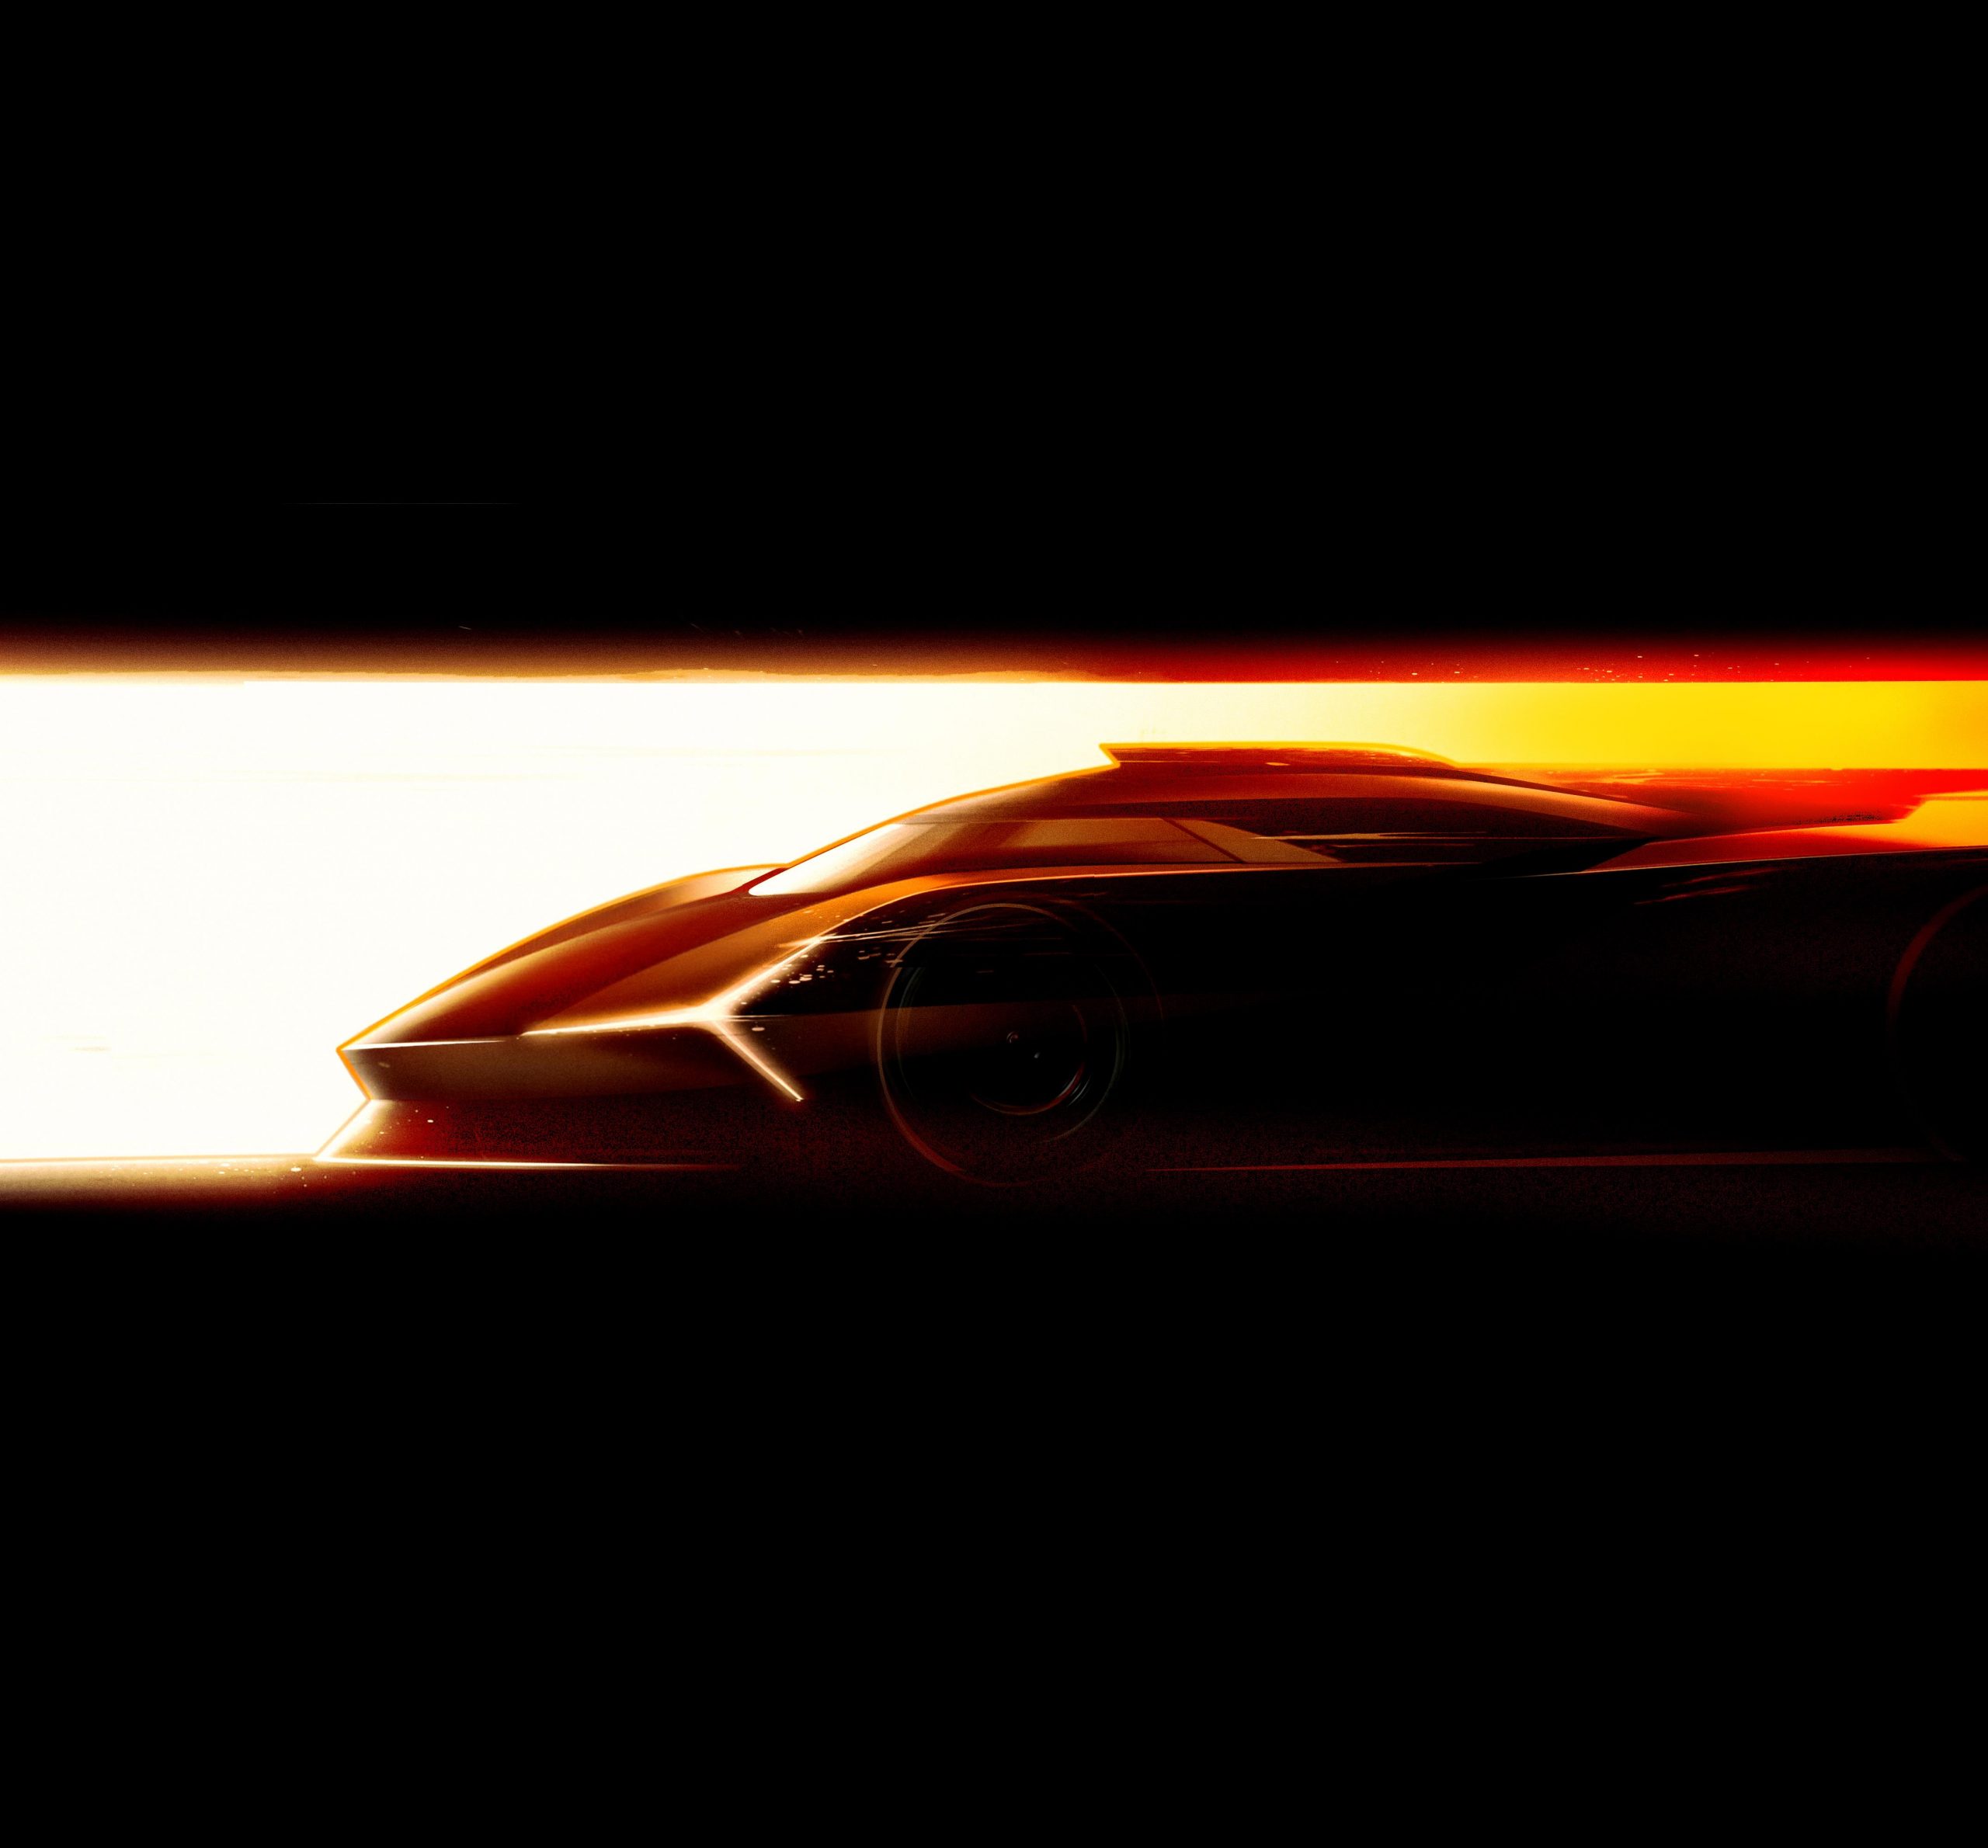 Lamborghini ibrida, un’auto da corsa per due campionati. Ecco la storia completa